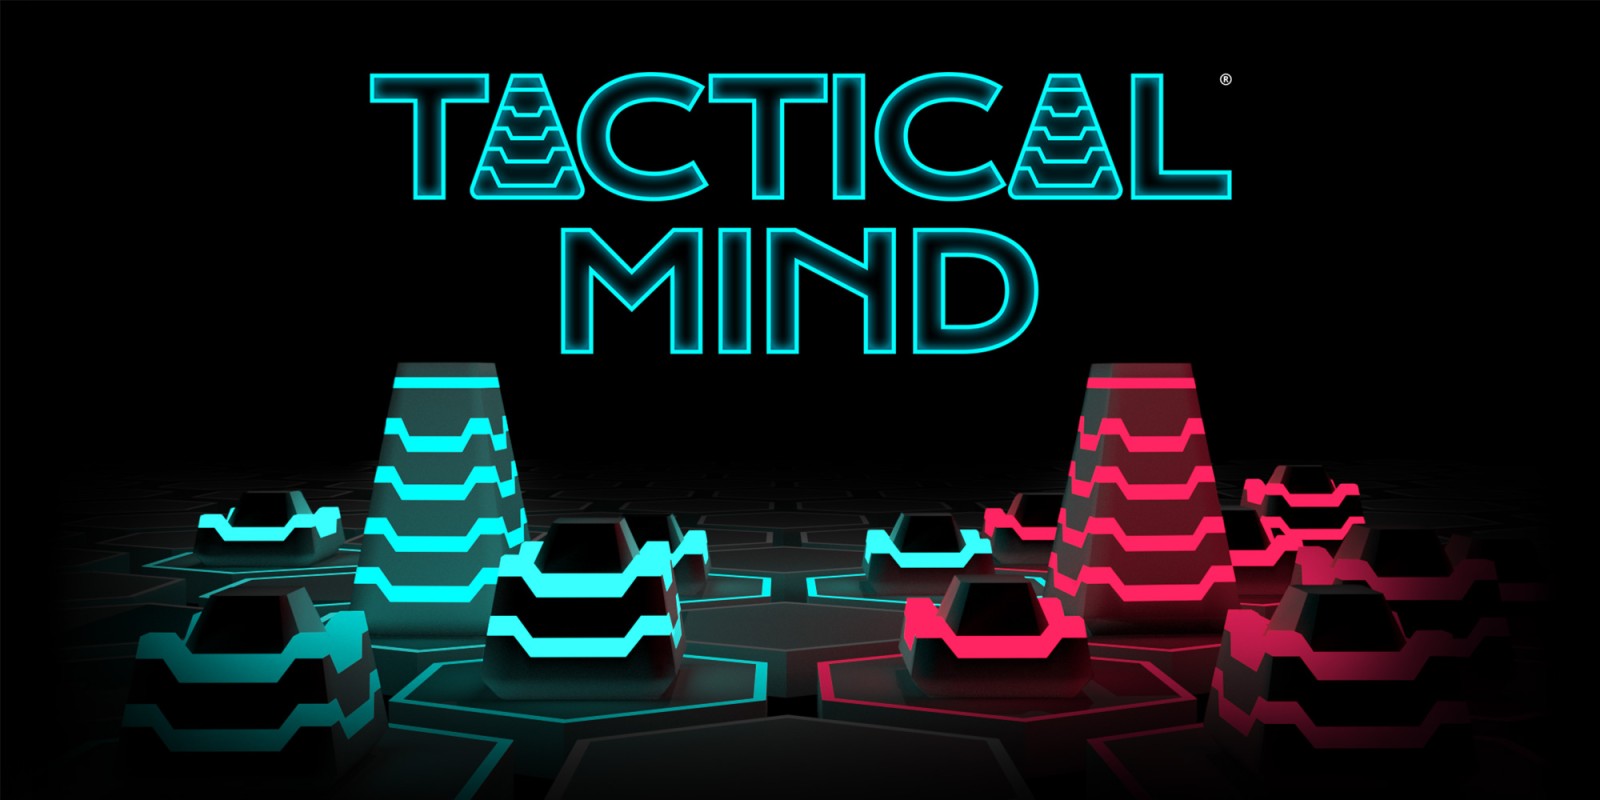 Tactical Mind